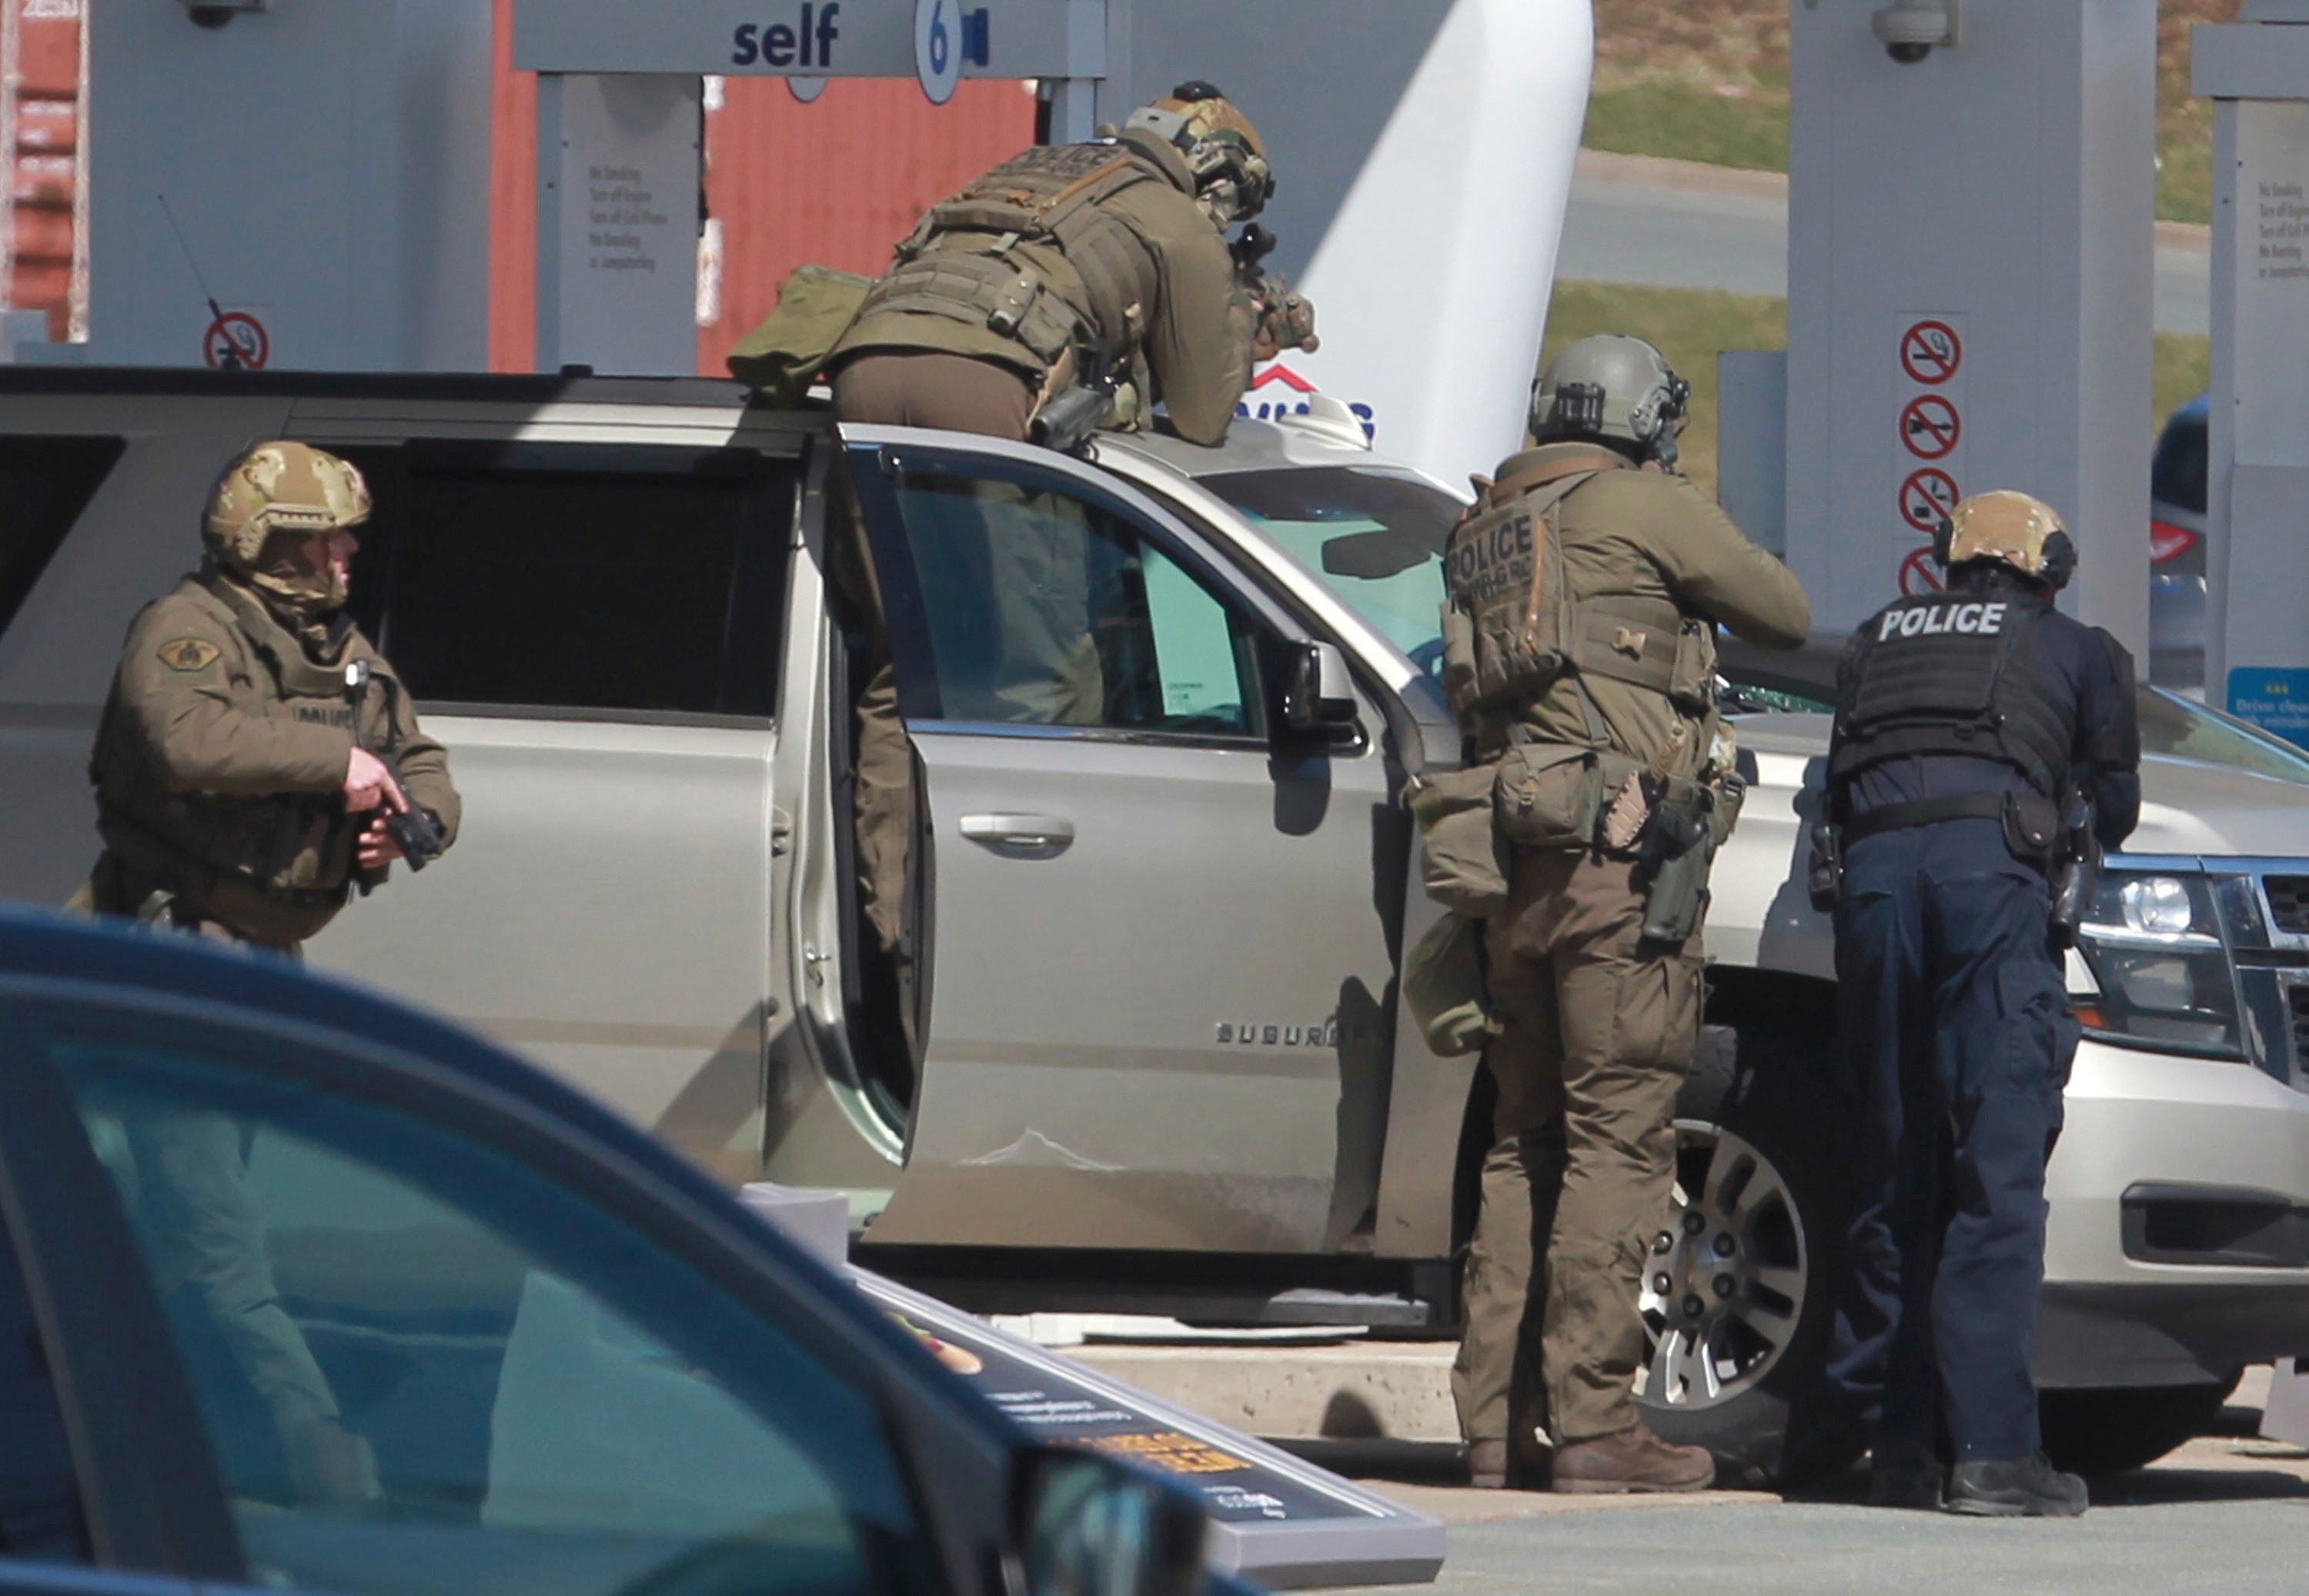 يستعد ضباط الشرطة لاحتجاز مشتبه فيه في محطة بنزين في إنفيلد ، نوفا سكوشا.